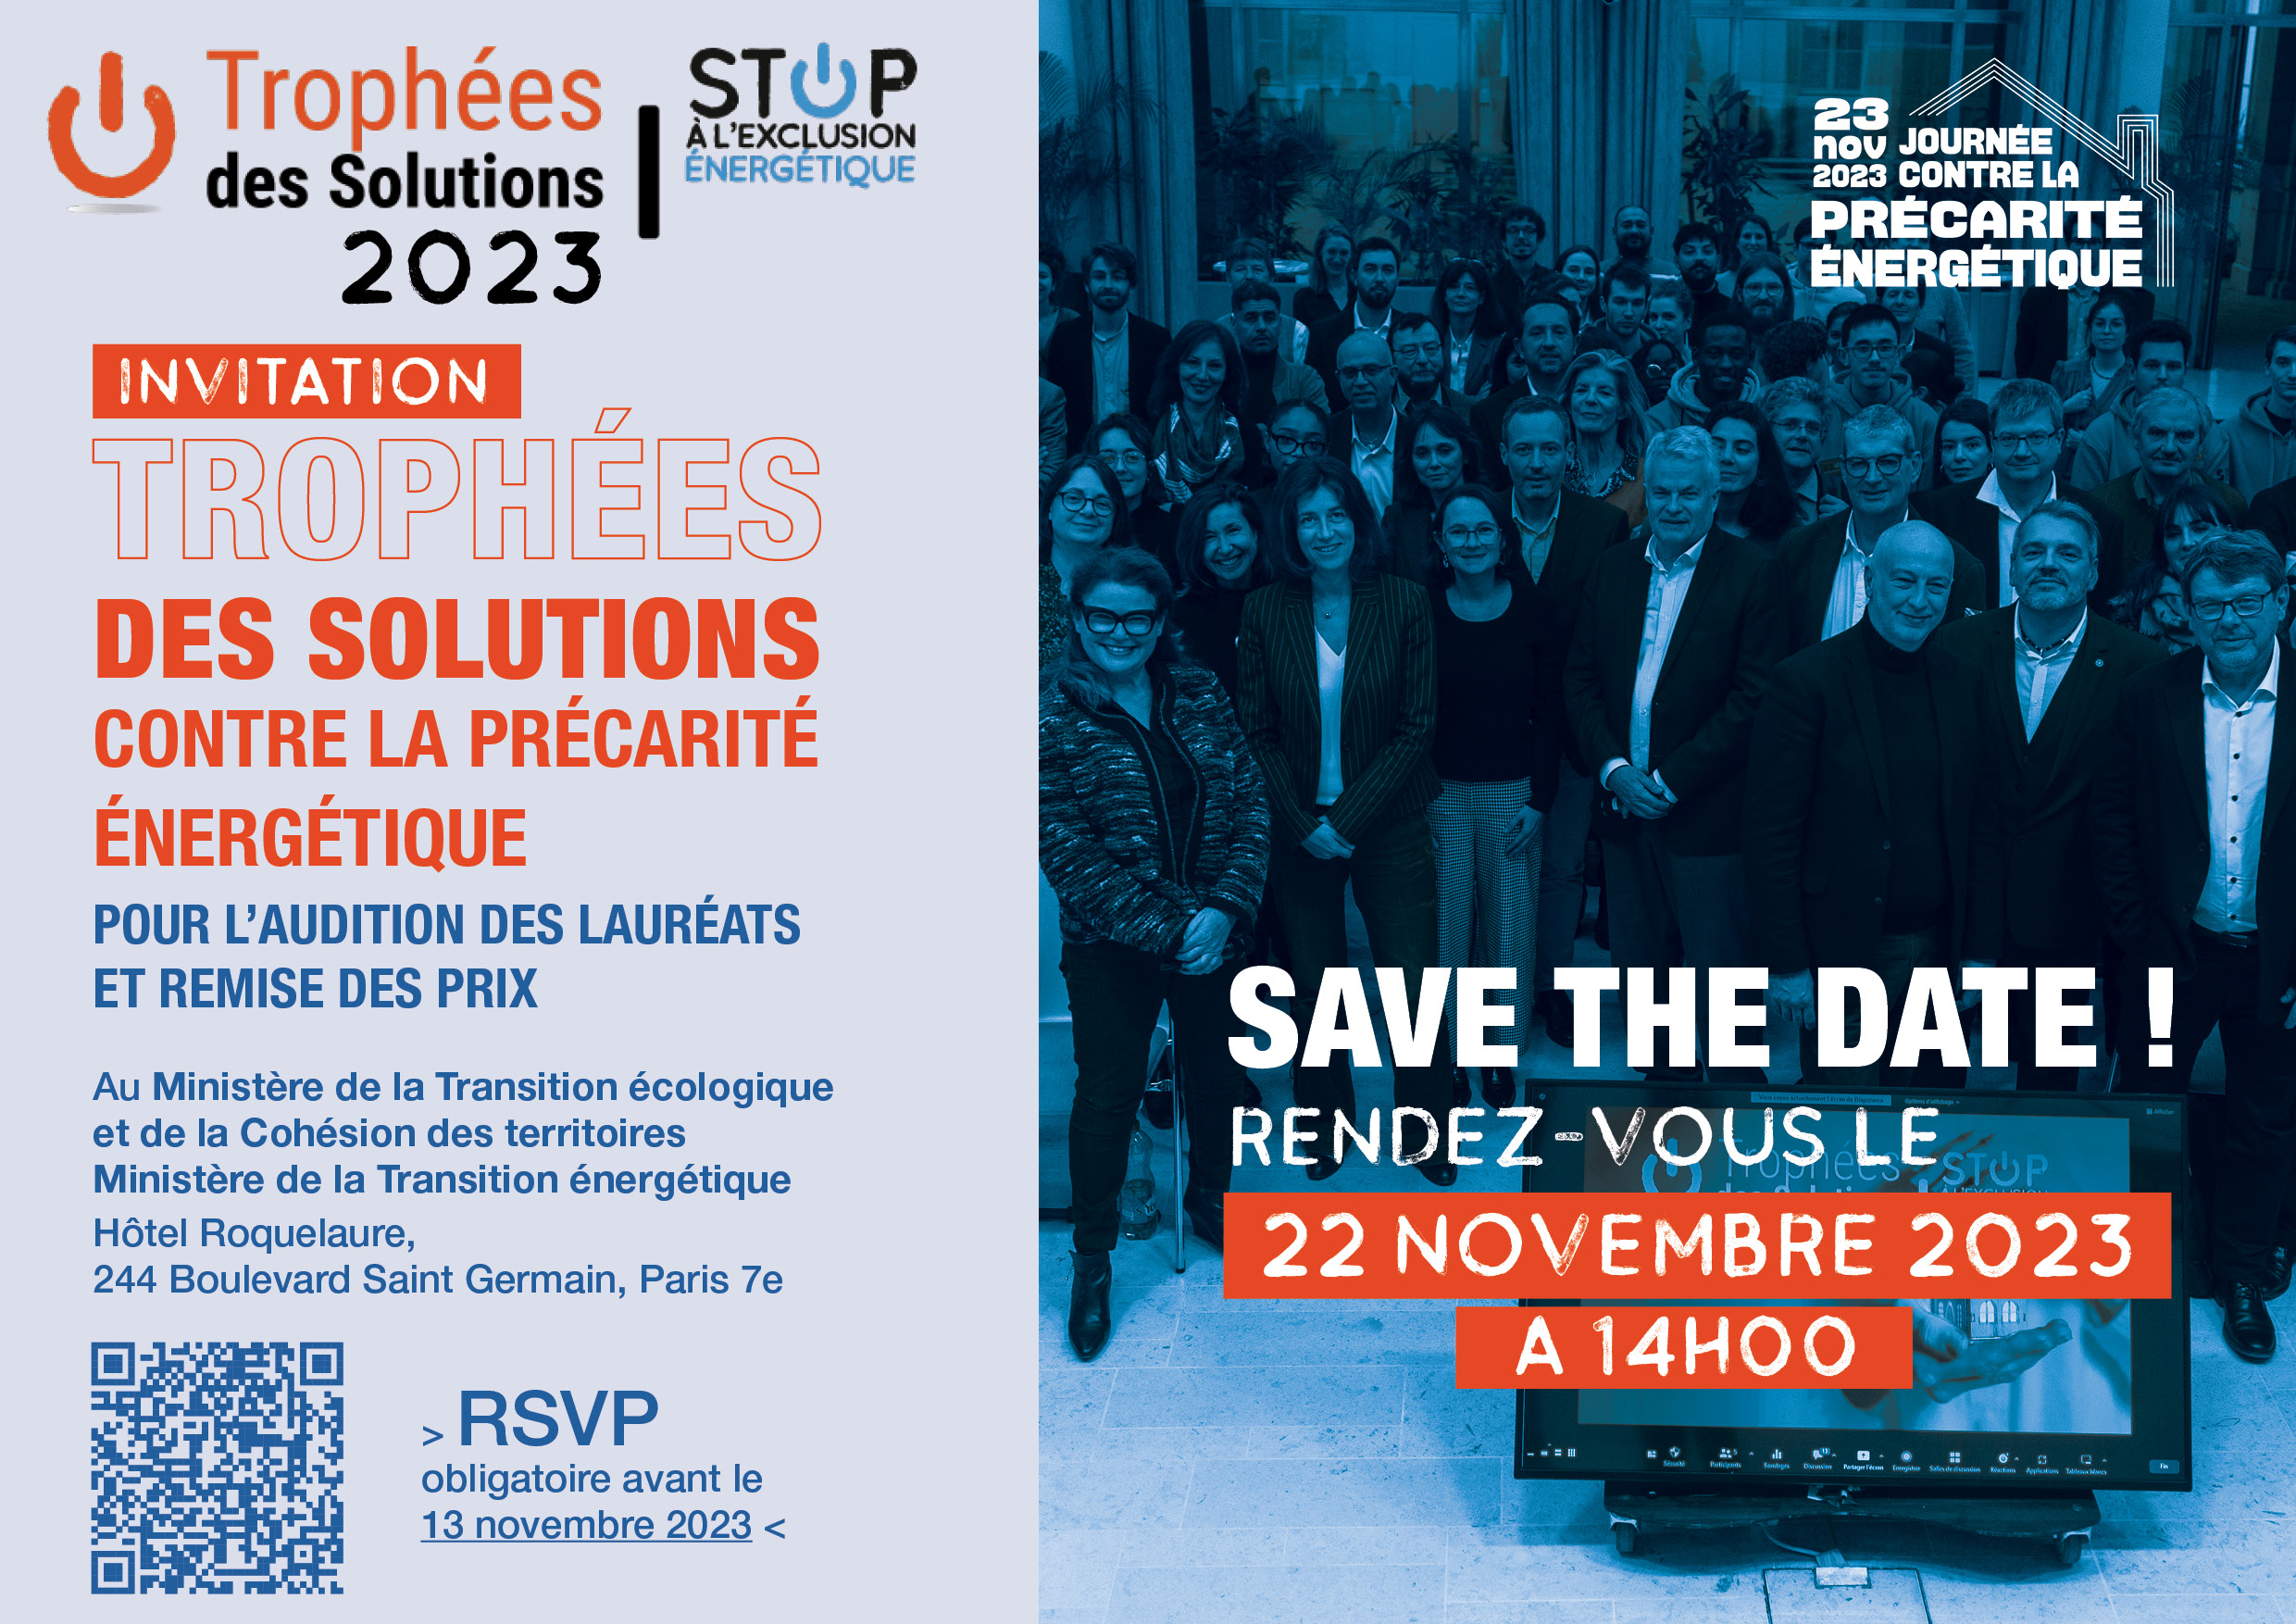 INVITATION 2023 TROPHÉES DES SOLUTIONS CONTRE LA PRÉCARITÉ ÉNERGÉTIQUE